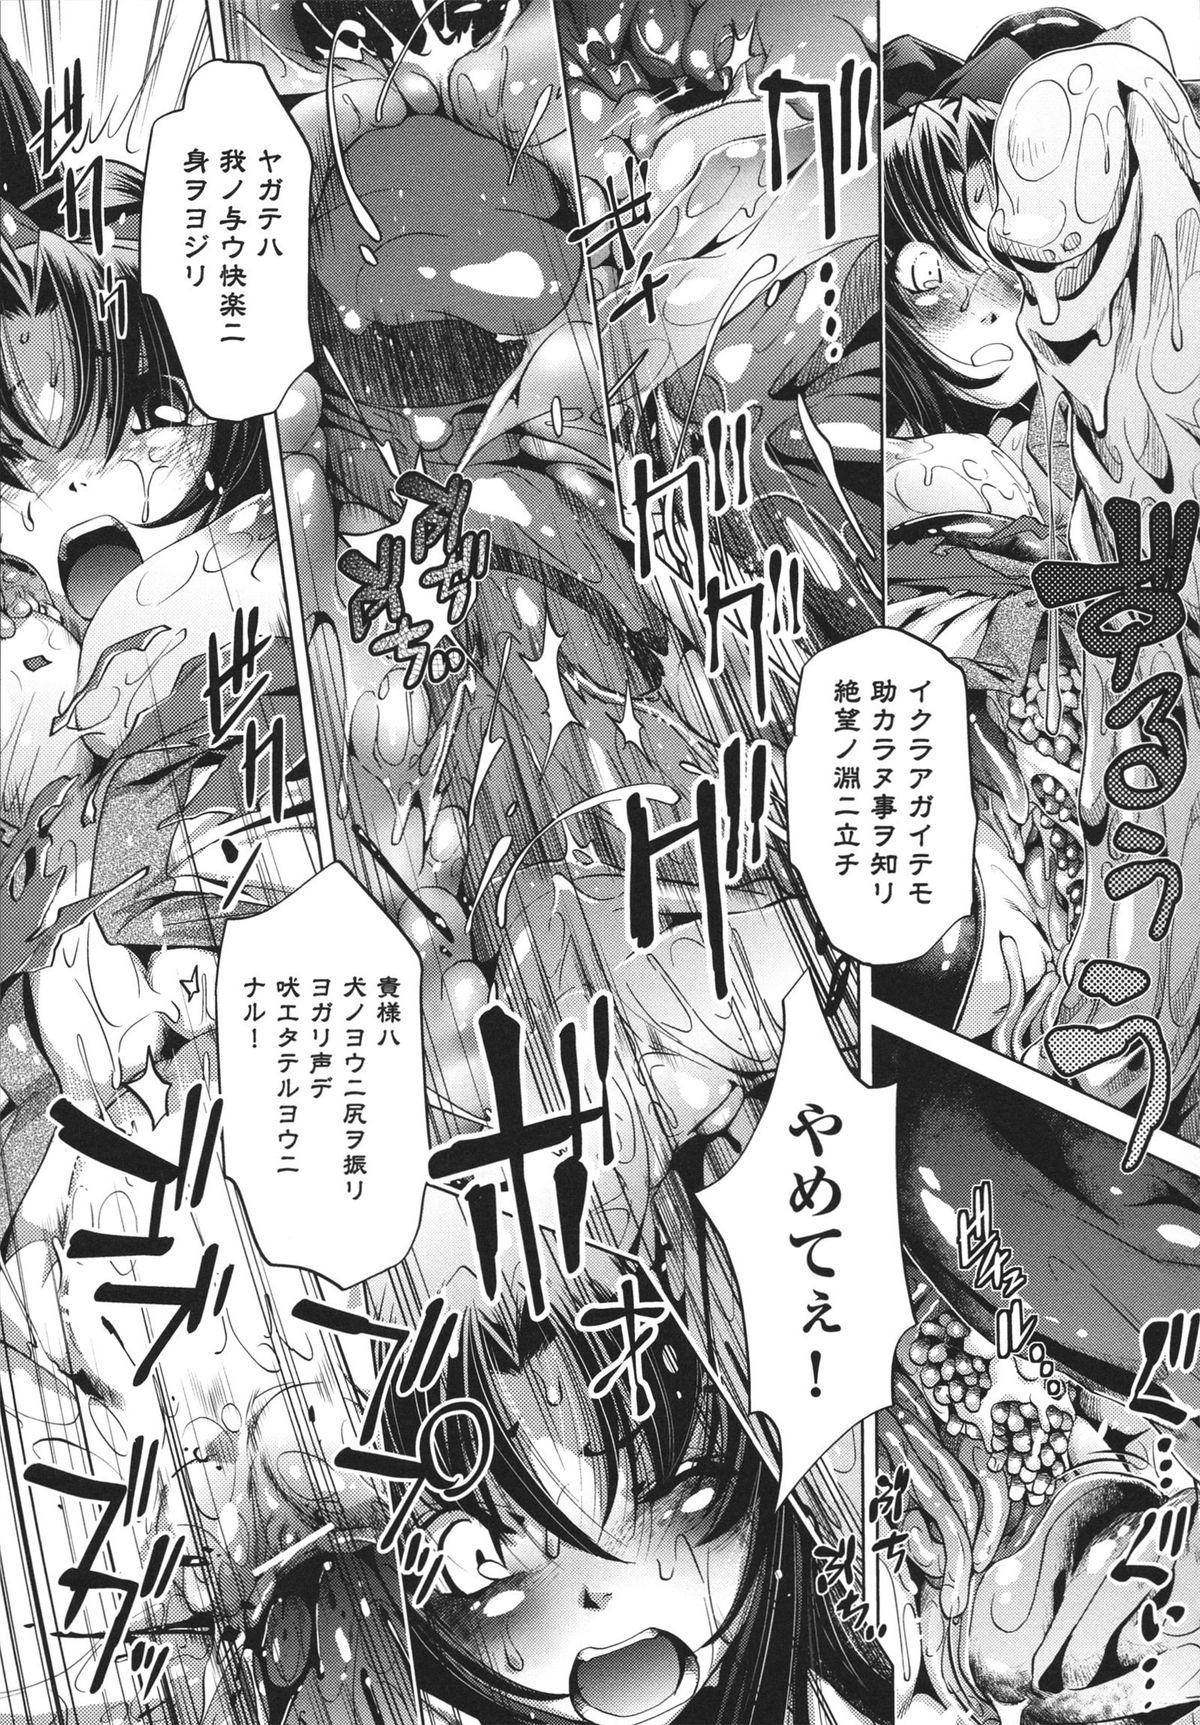 [Ootori Ryuuji] Shokushu wa Yawarakana Chibusa ni Makitsuki Onna-tachi no Ana wo Kakimidasu - Feeler coils around a soft breast and violates women's hole. 44